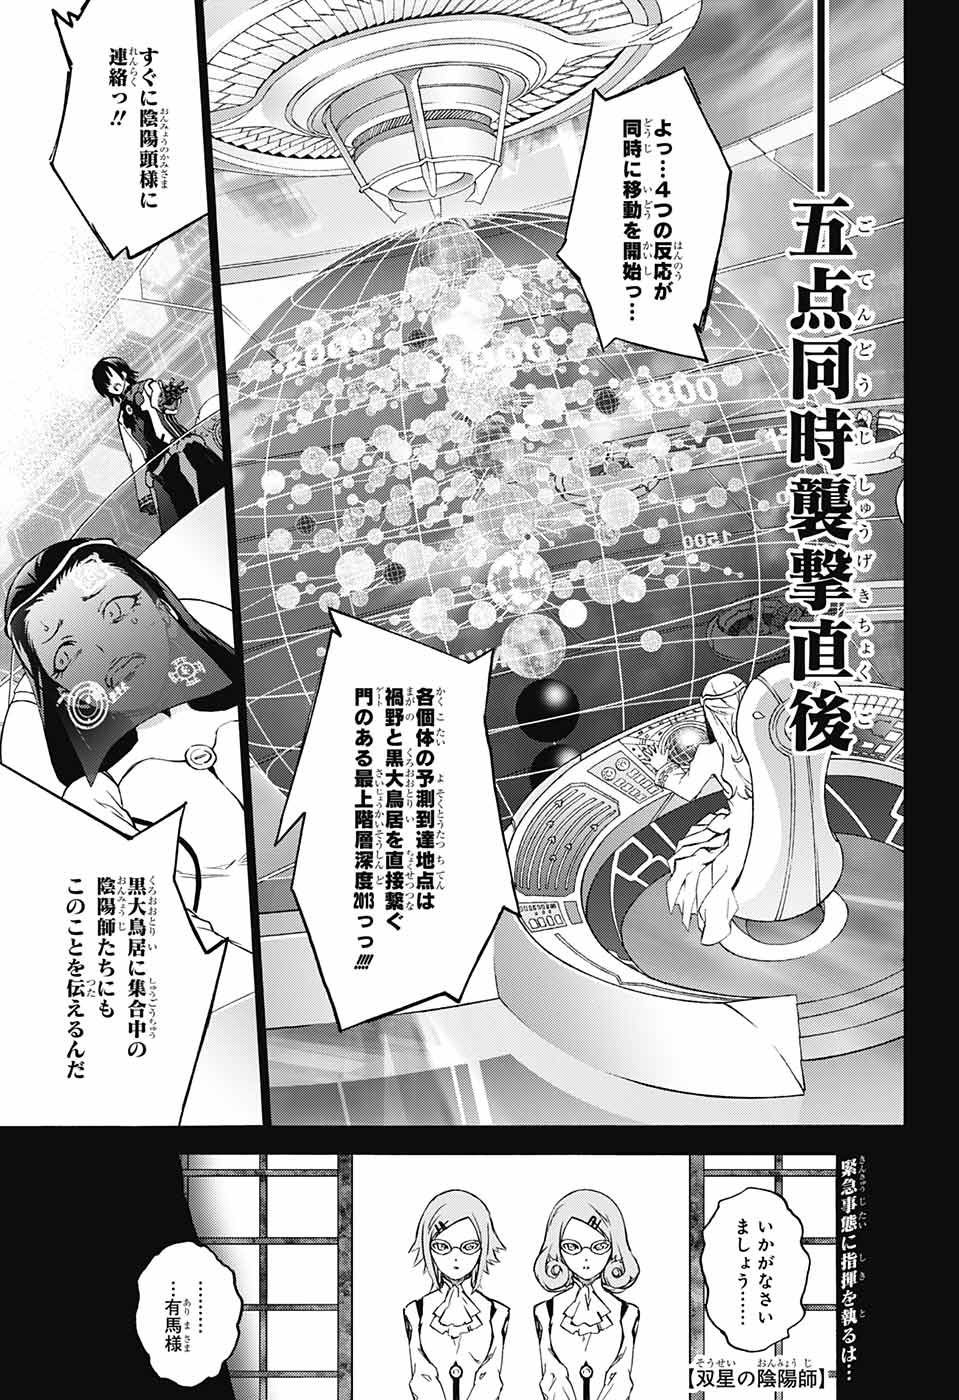 Sousei no Onmyouji - Chapter 62 - Page 1